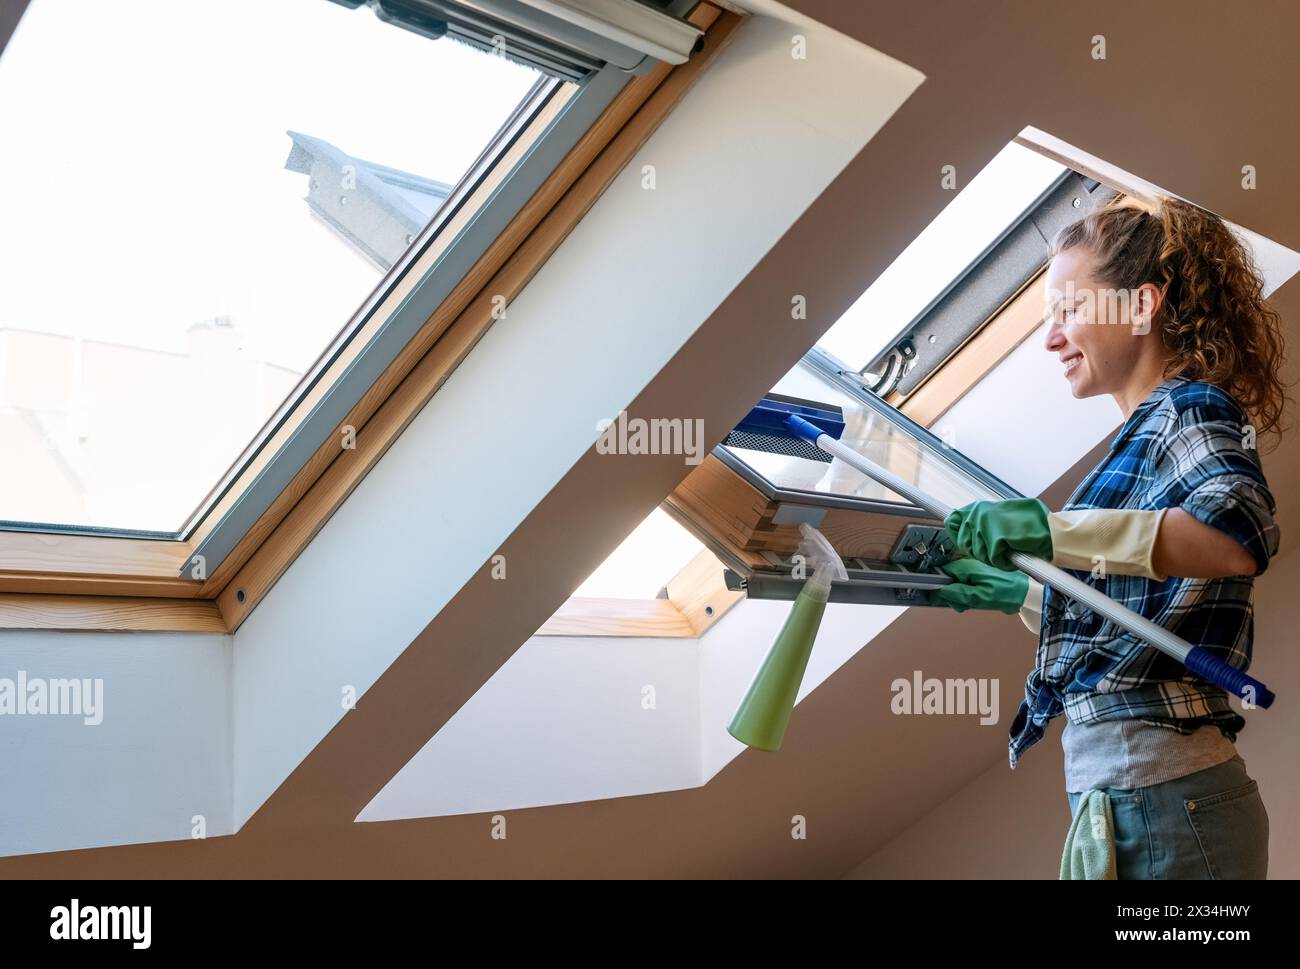 Lavori domestici e stile di vita domestico. La donna lava le finestre nel suo appartamento. Foto Stock